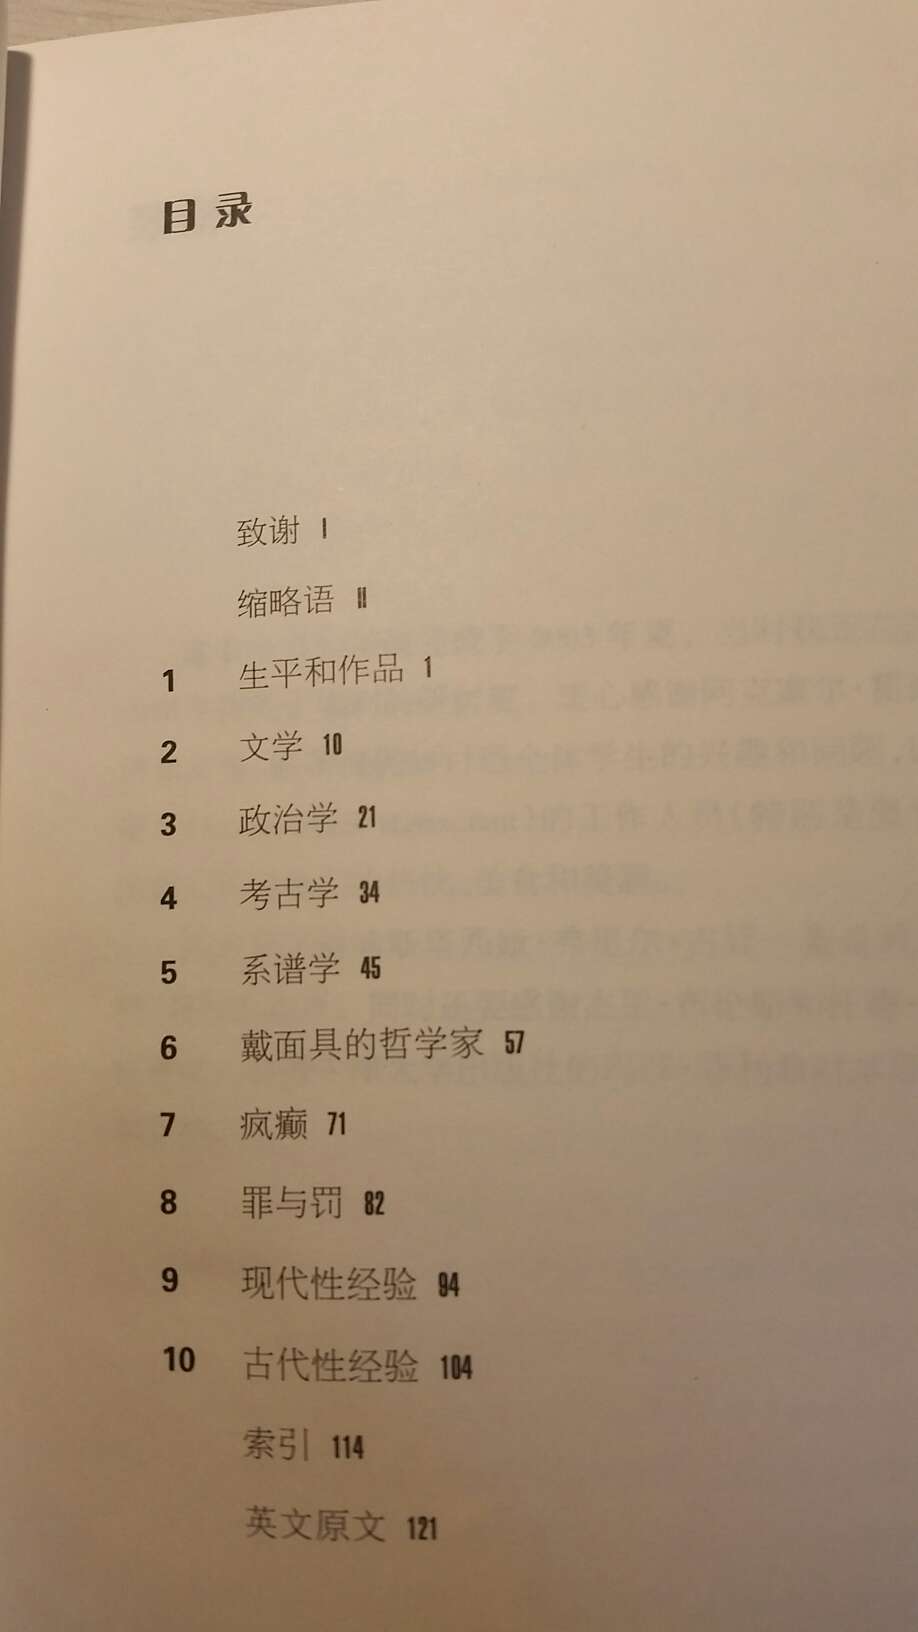 一半中文，一半英文，作者对福科的作品既有赞同也有批判，比较客观。